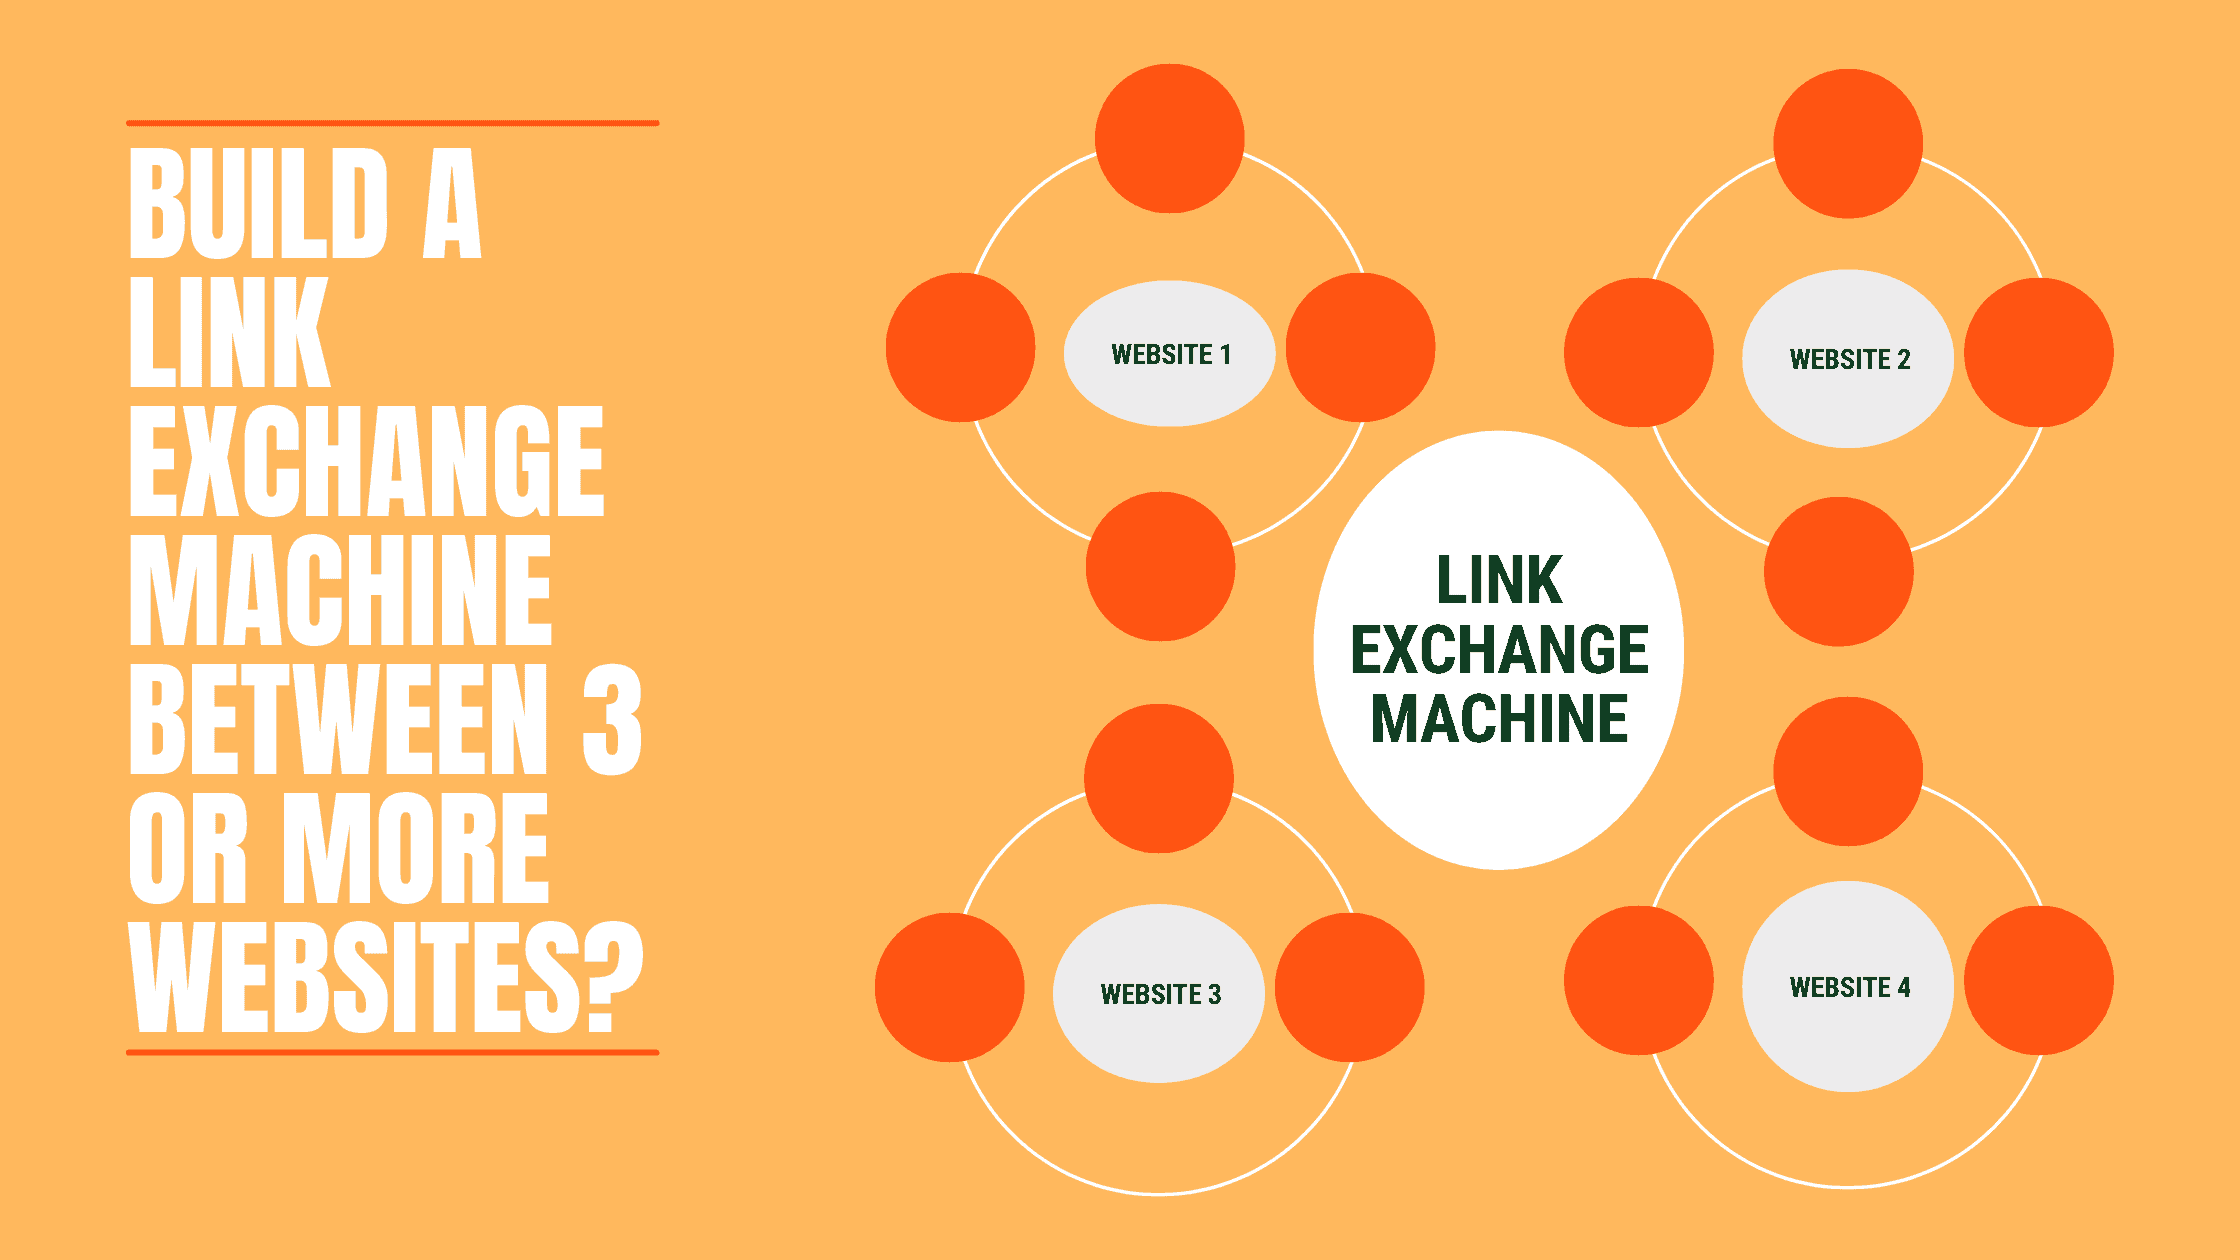 Build A Link Exchange Machine Between 3 Or More Websites